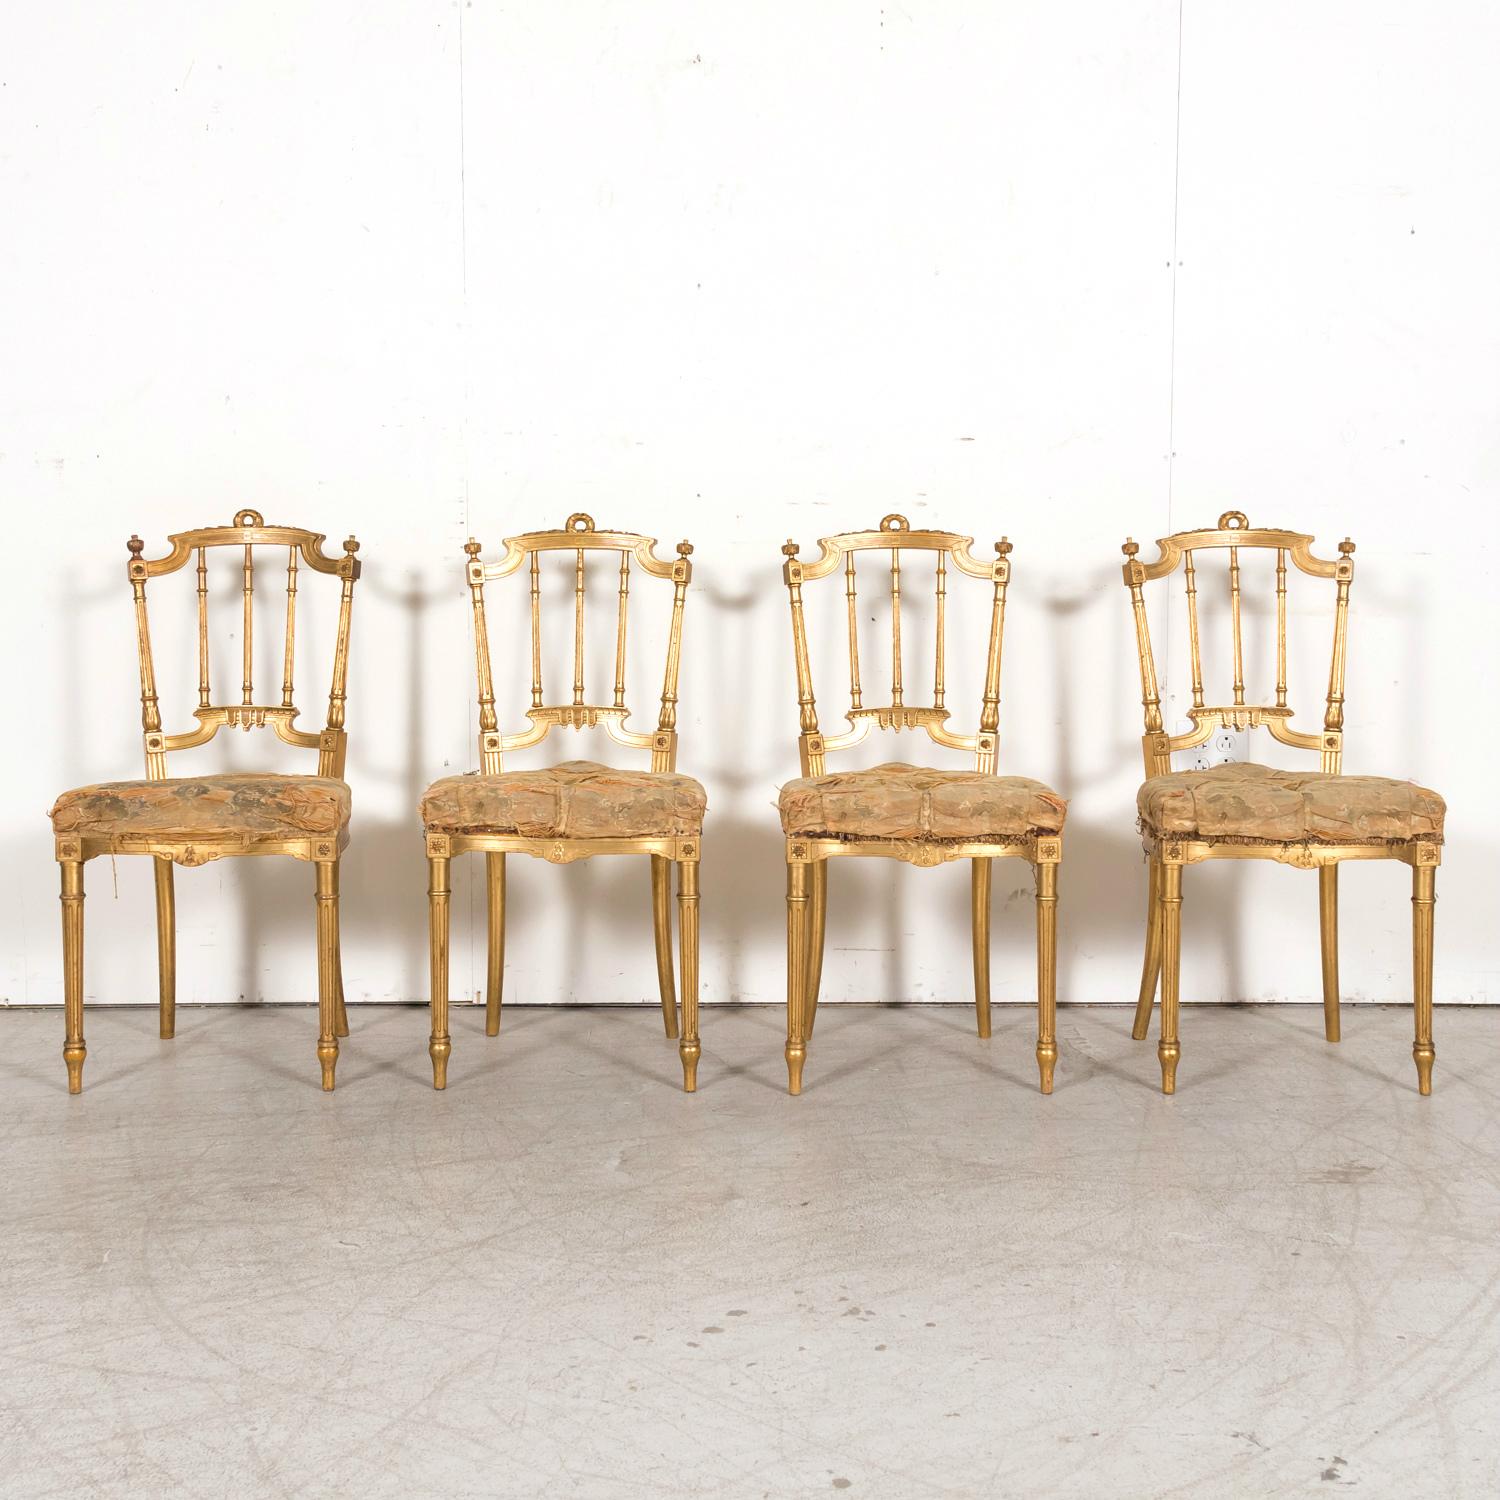 Quatre chaises d'opéra françaises du XIXe siècle de style Louis XVI, dorées, avec des sièges touffetés, fabriquées à la main à Paris, vers les années 1860. L'oxydation rouge laisse apparaître la belle patine dorée à l'eau d'origine des chaises.